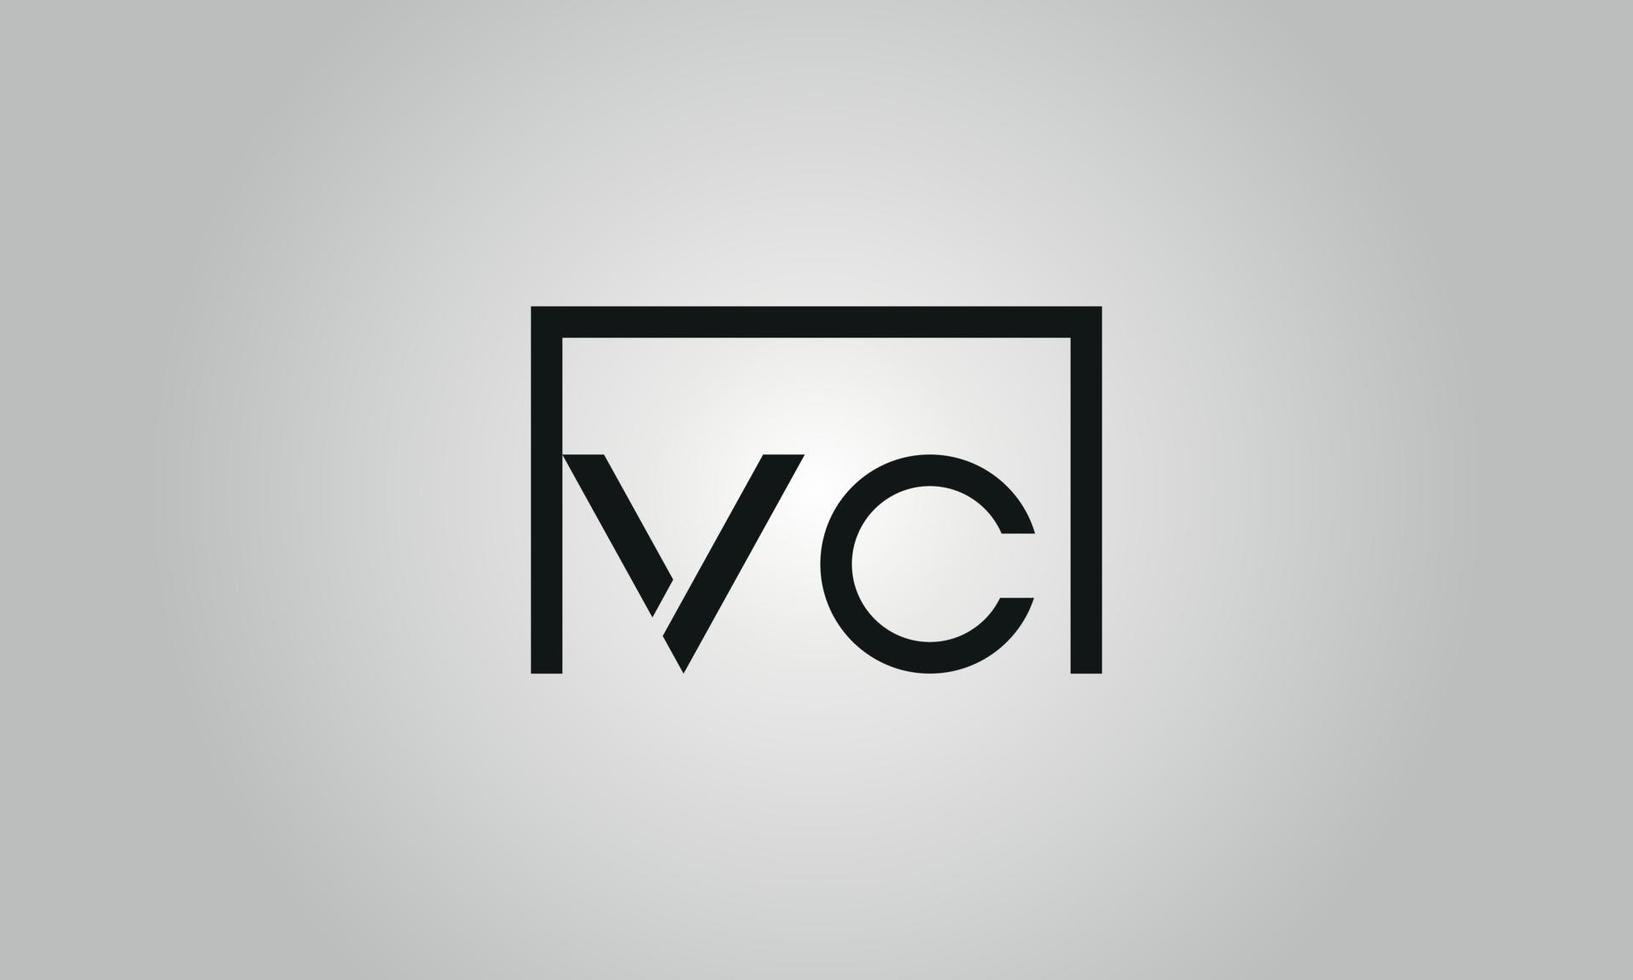 brief vc logo ontwerp. vc logo met plein vorm in zwart kleuren vector vrij vector sjabloon.